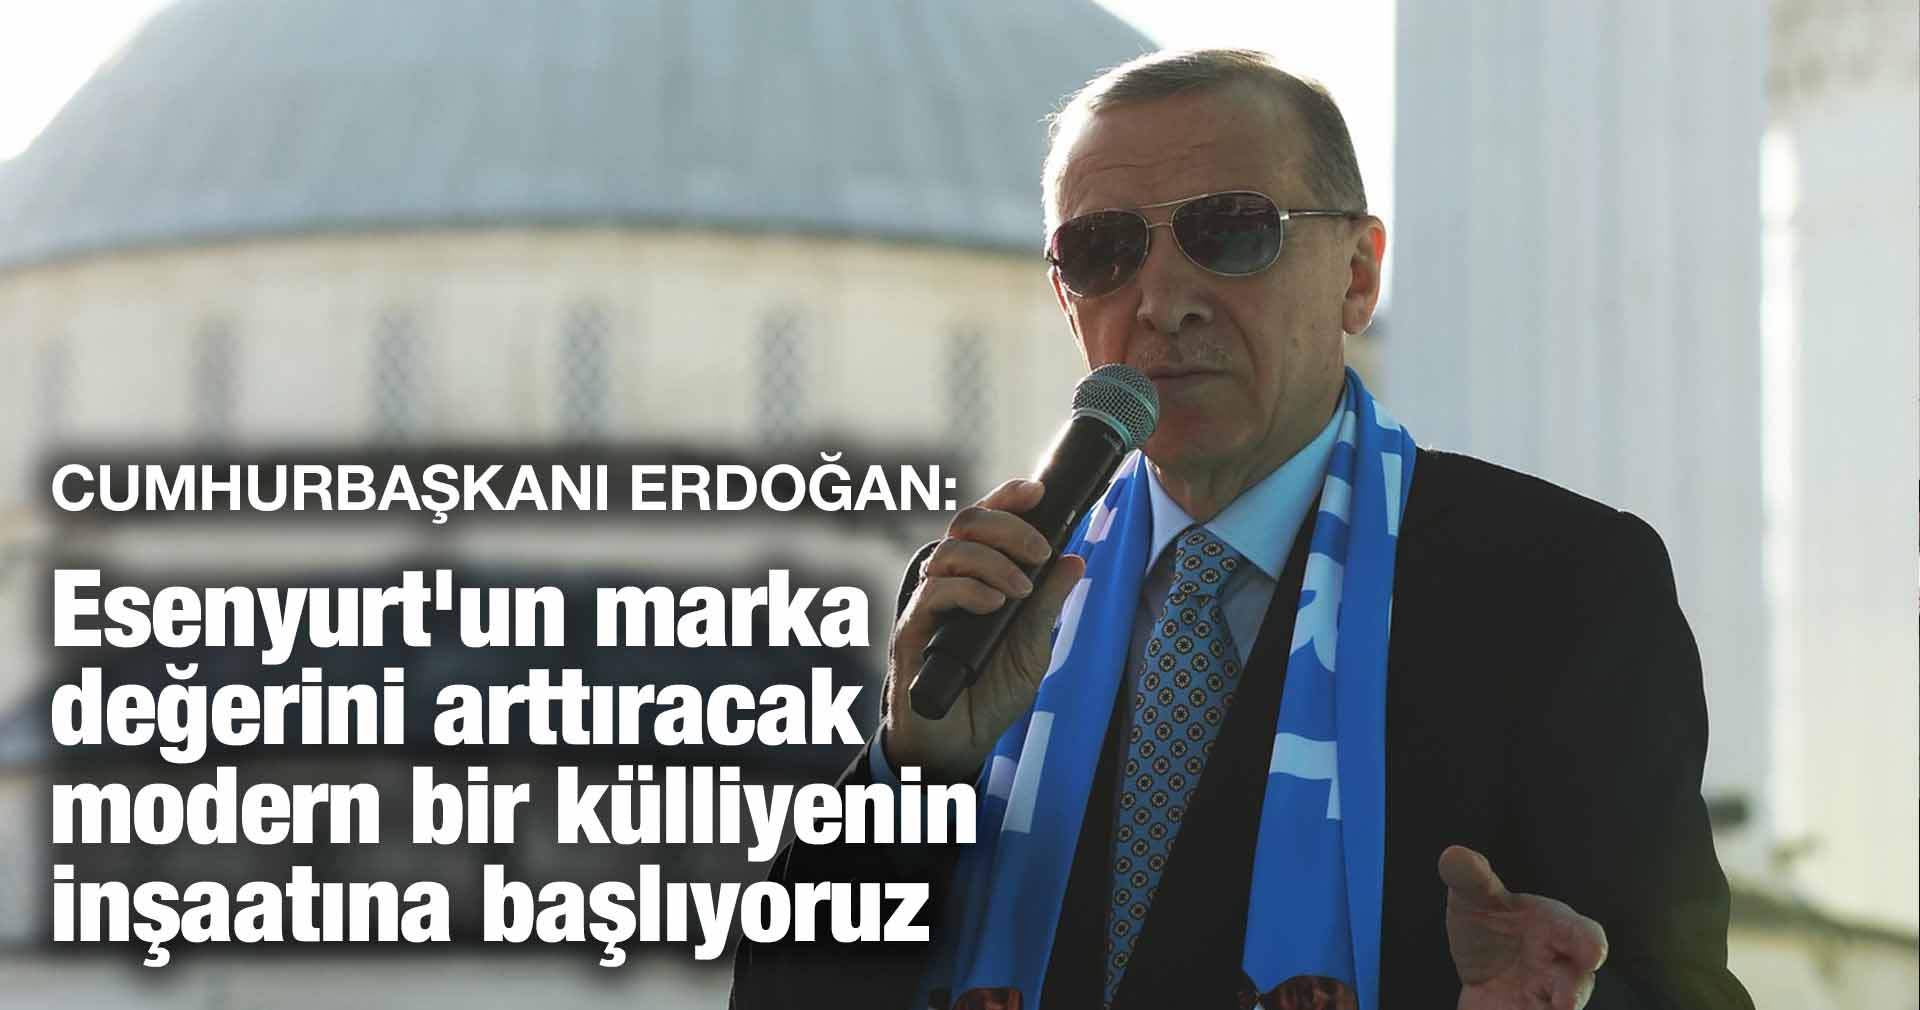 Erdoğan: Esenyurt’un marka değerini arttıracak modern bir külliyenin inşaatına başlıyoruz